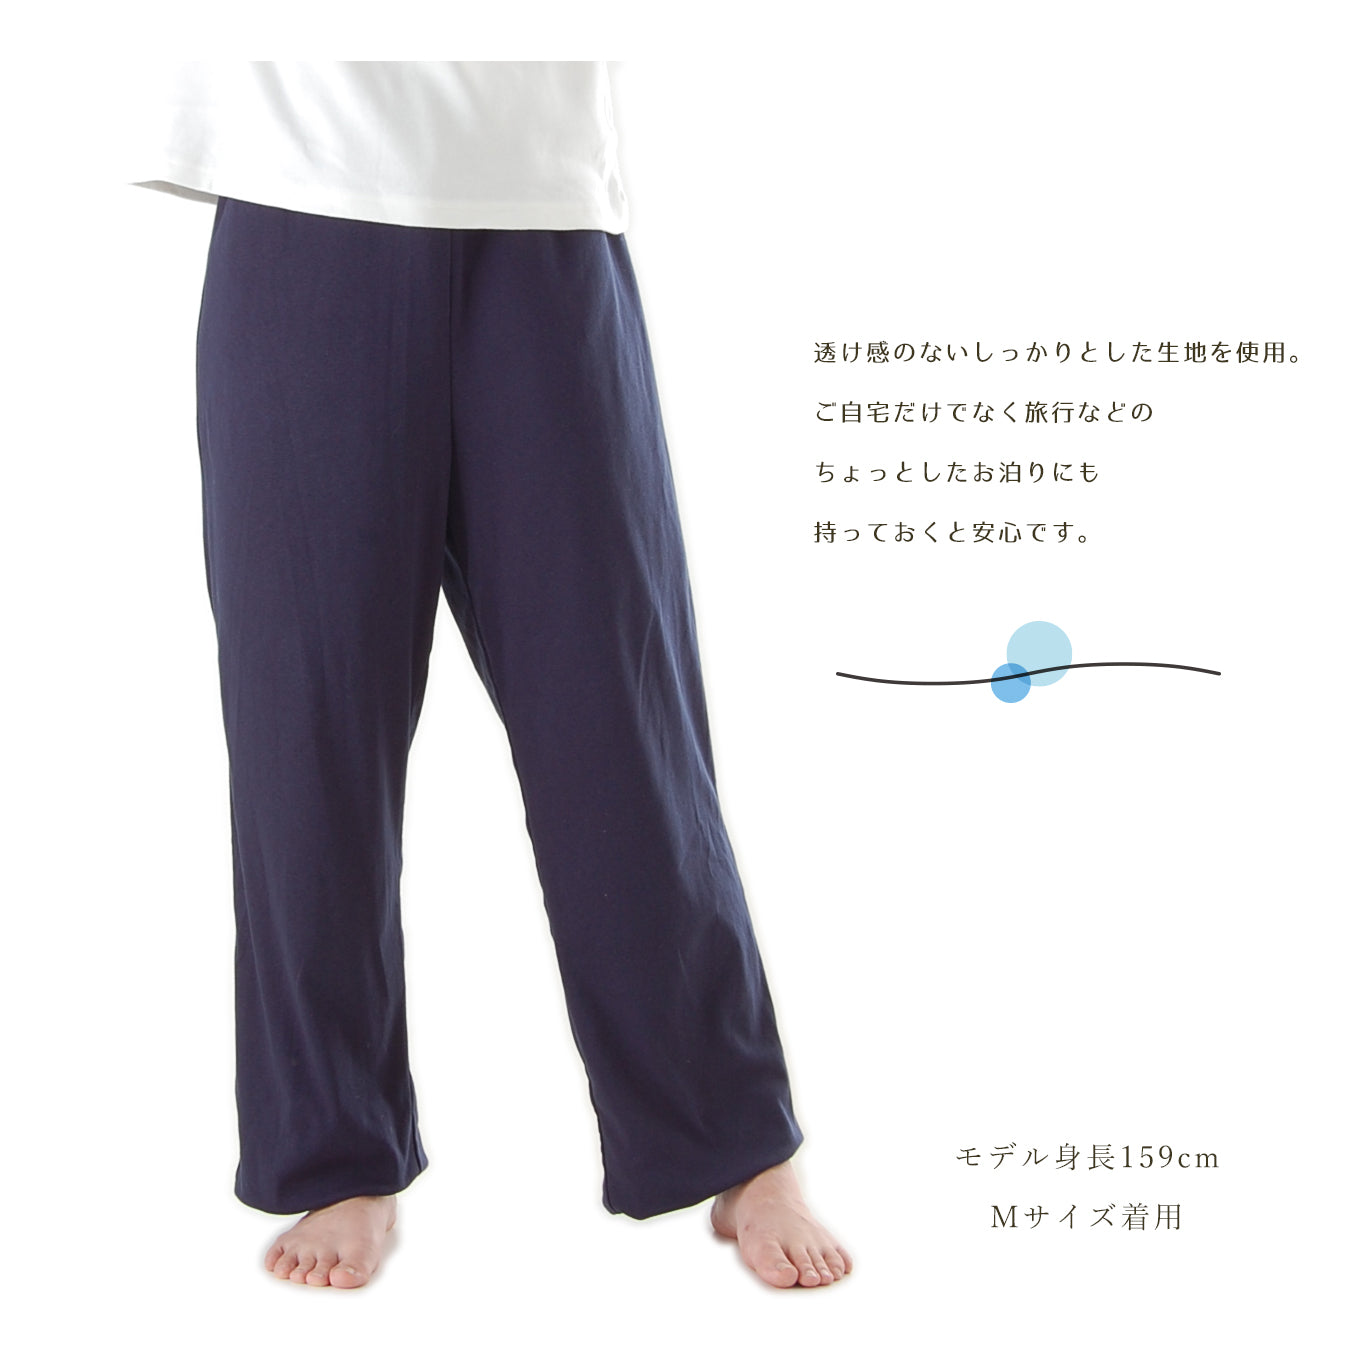 60cc】日本製 すいとるパジャマ ズボン(下だけ_男女兼用)